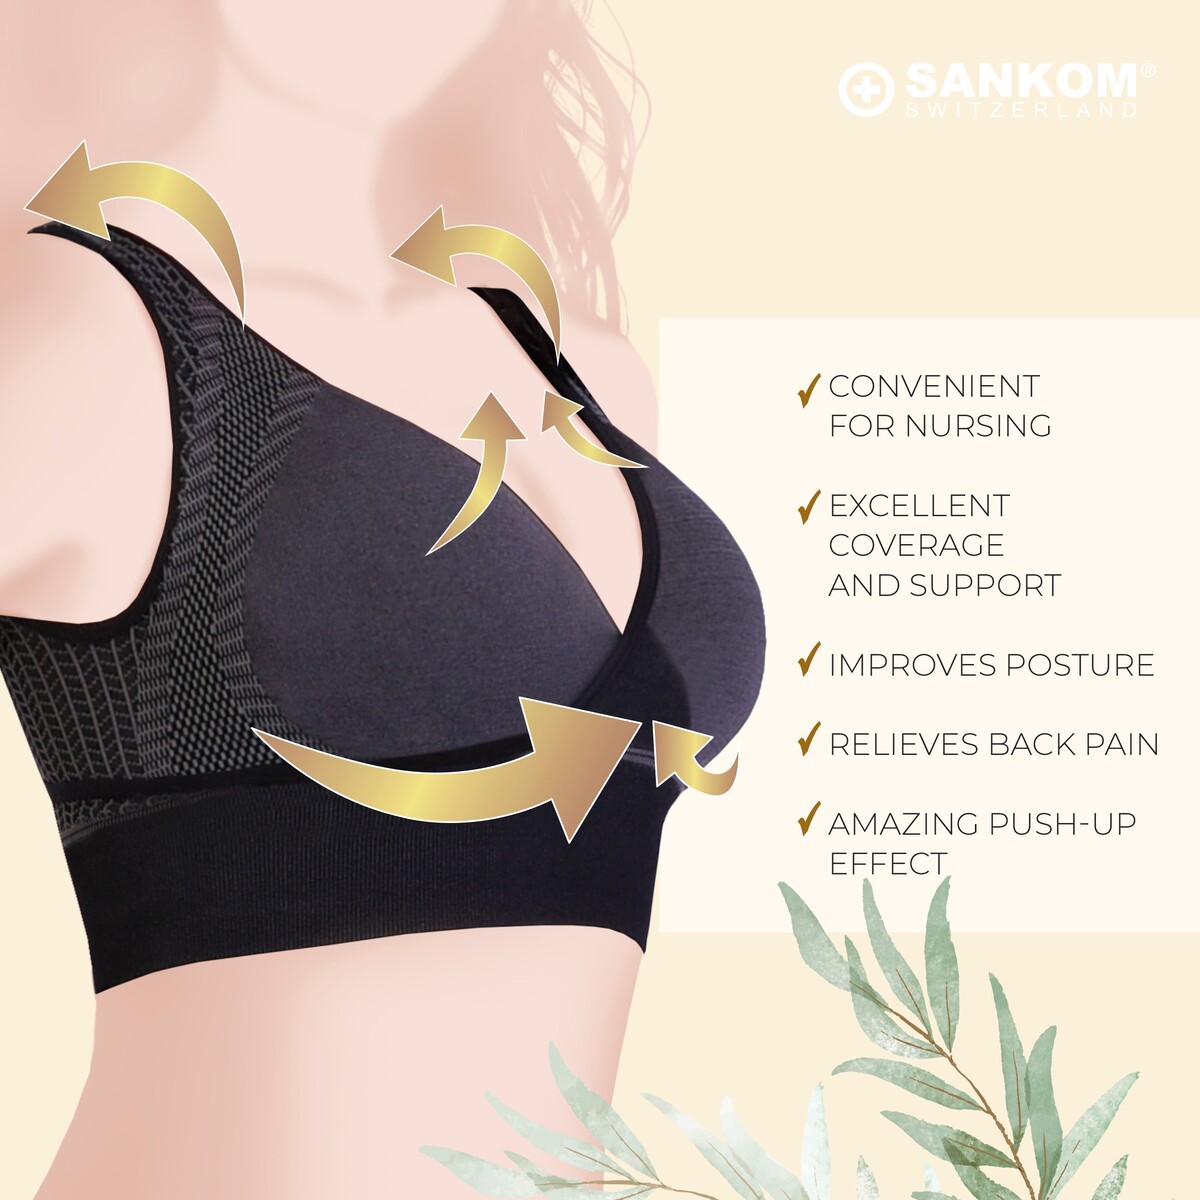 Sankom - Patent Classic Bra For Back Support, Black XL/XXL